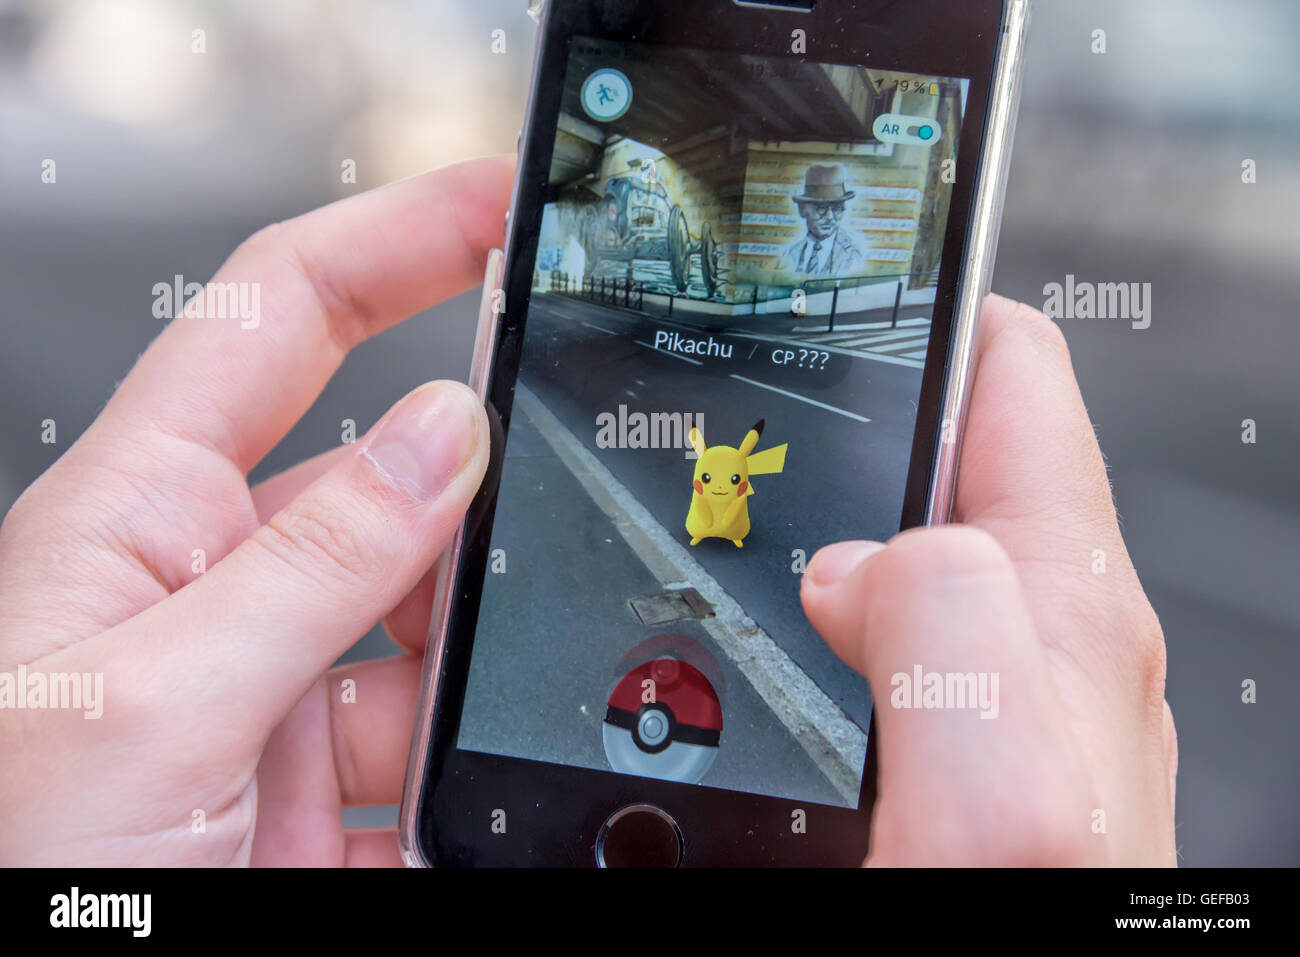 CHAVILLE, FRANCE - Juillet 24 : Apple iPhone5s avec Pikachu de Pokemon Rendez l'application, les mains d'un adolescent jouant sur la première da Banque D'Images